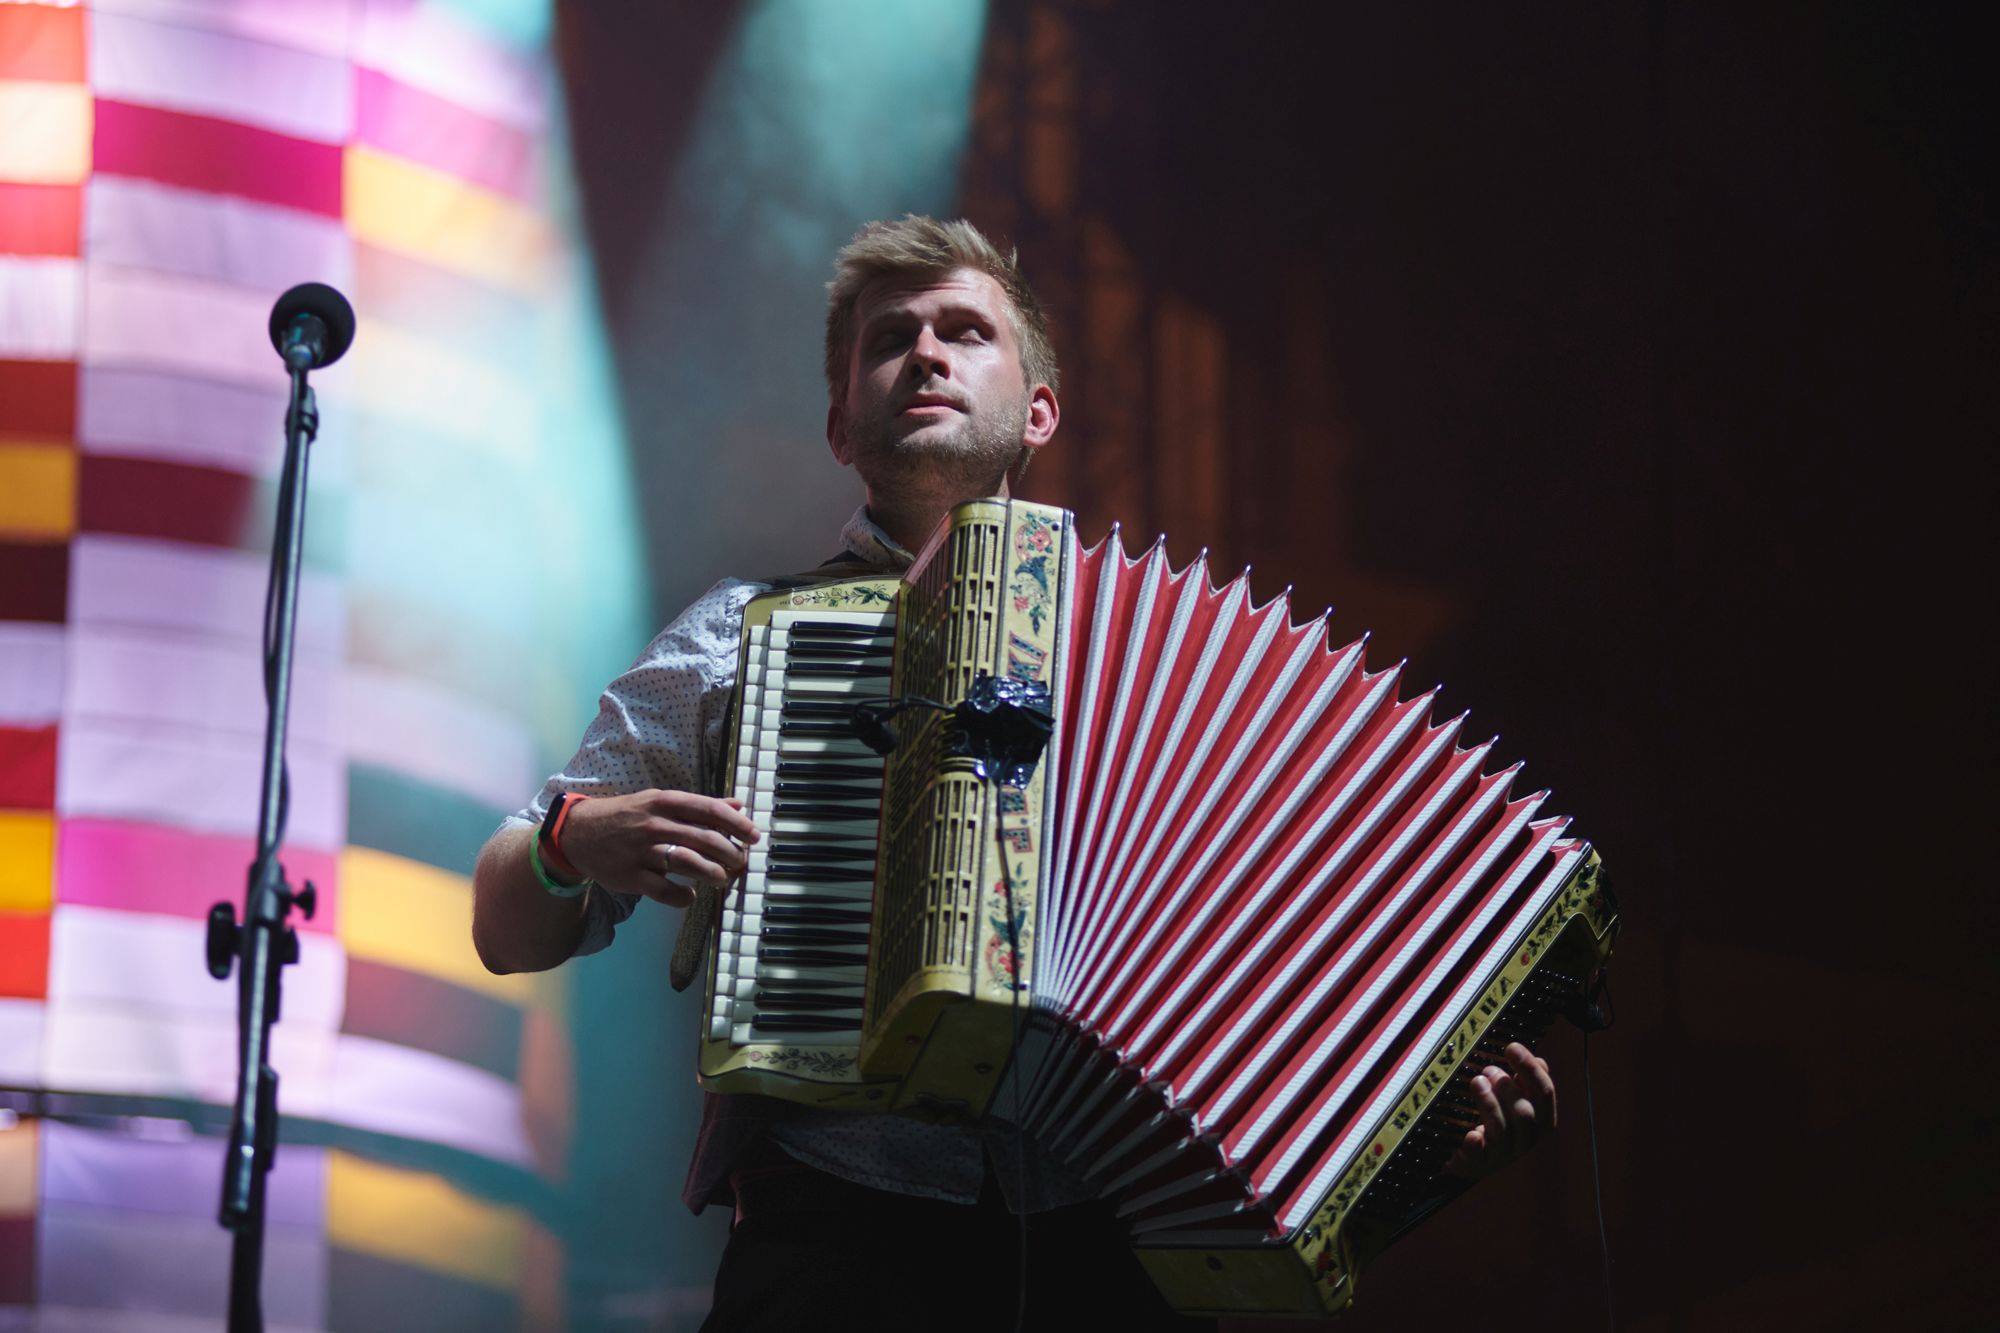 Na zdjęciu Mateusz Wachowiak z WoWaKin Trio. Mężczyzna stoi na scenie, ma zamknięte oczy, gra na akordeonie.